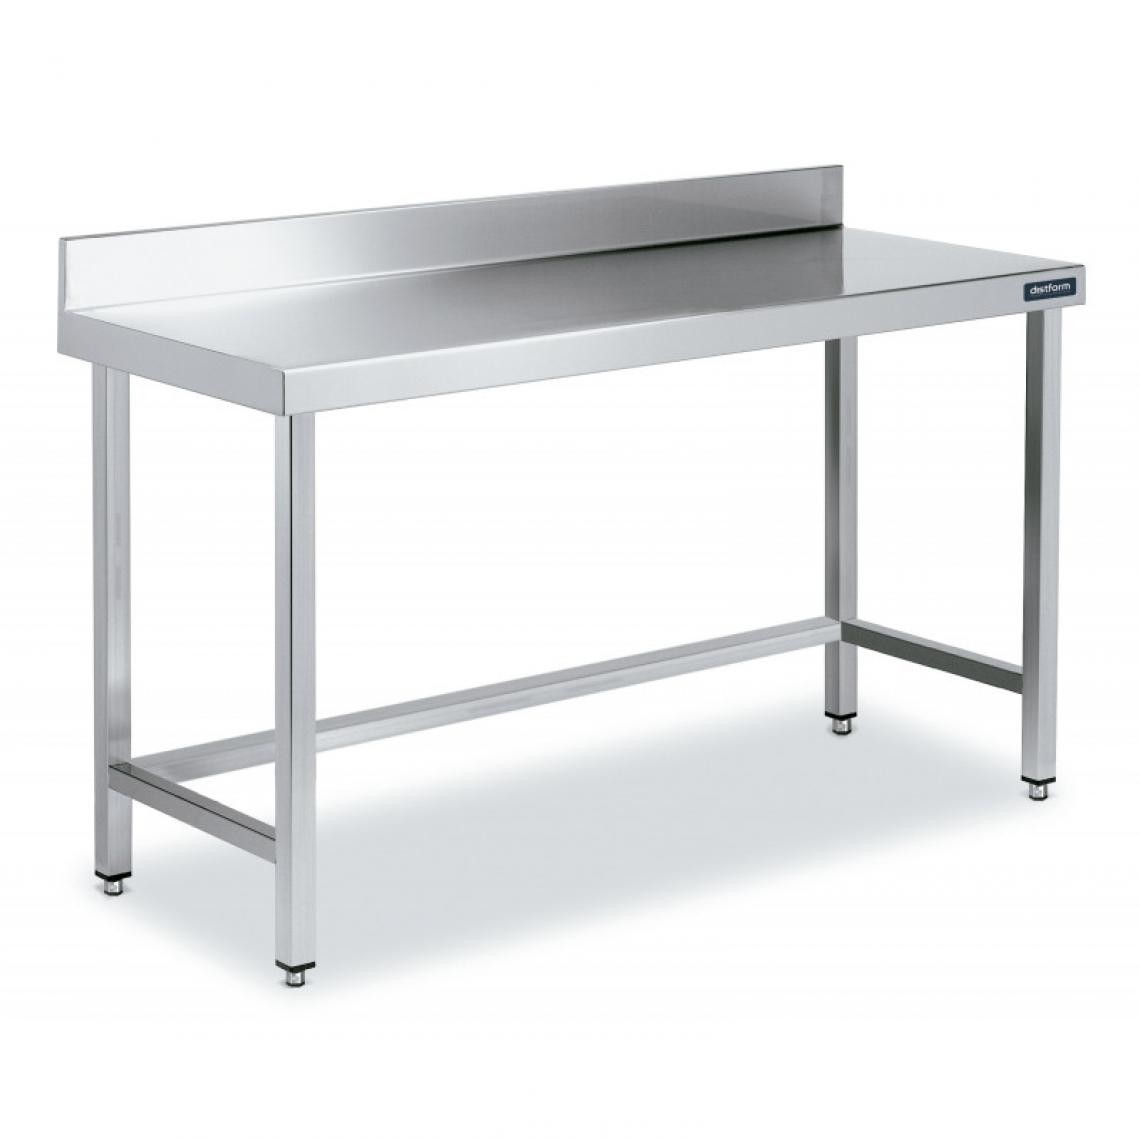 DISTFORM - Table Adossée en Inox avec Renforts Profondeur 600 mm - Distform - Acier inoxydable1800x600 - Tables à manger